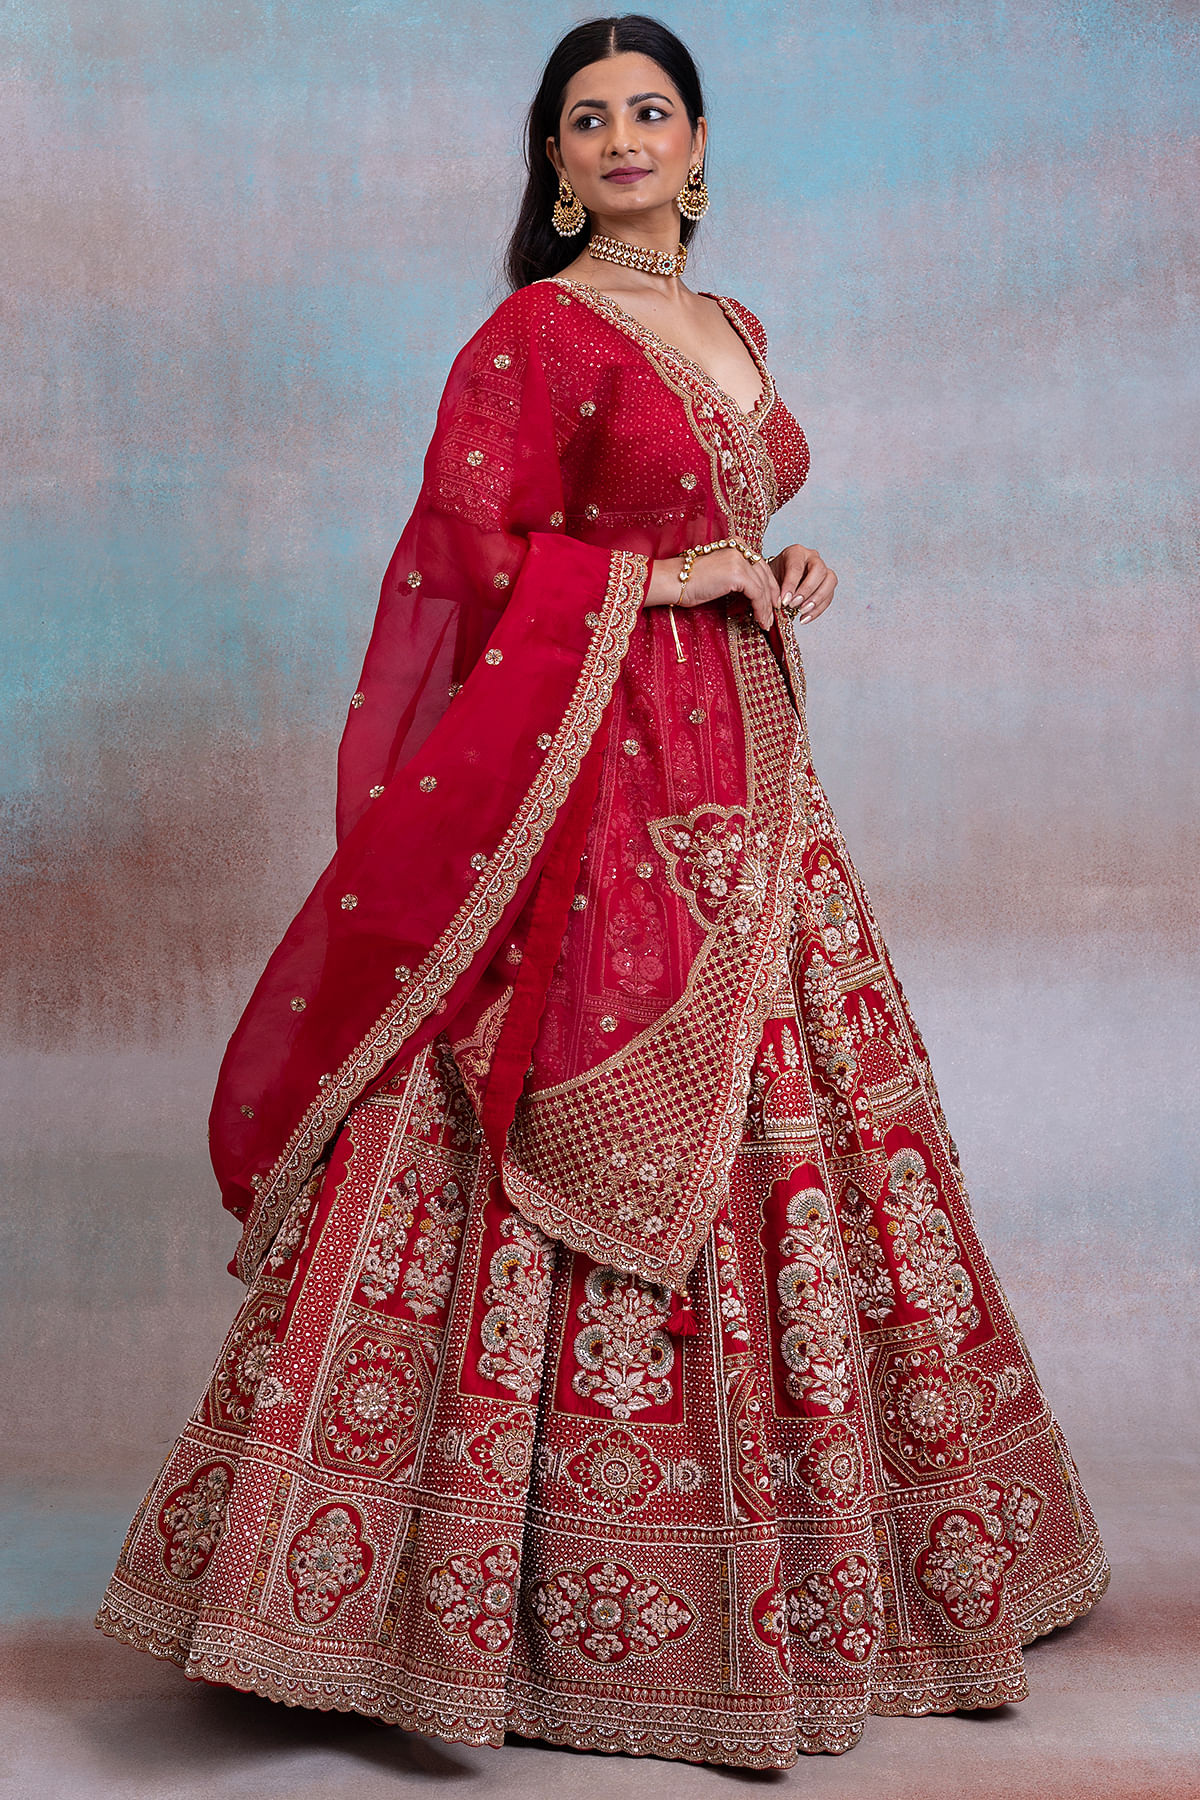 BLUE Velvet Patch Designer Bridal Lehenga Choli With Double Dupatta Indian Wedding  Dress for Bridal Pink and Maroon Lehenga - Etsy Israel